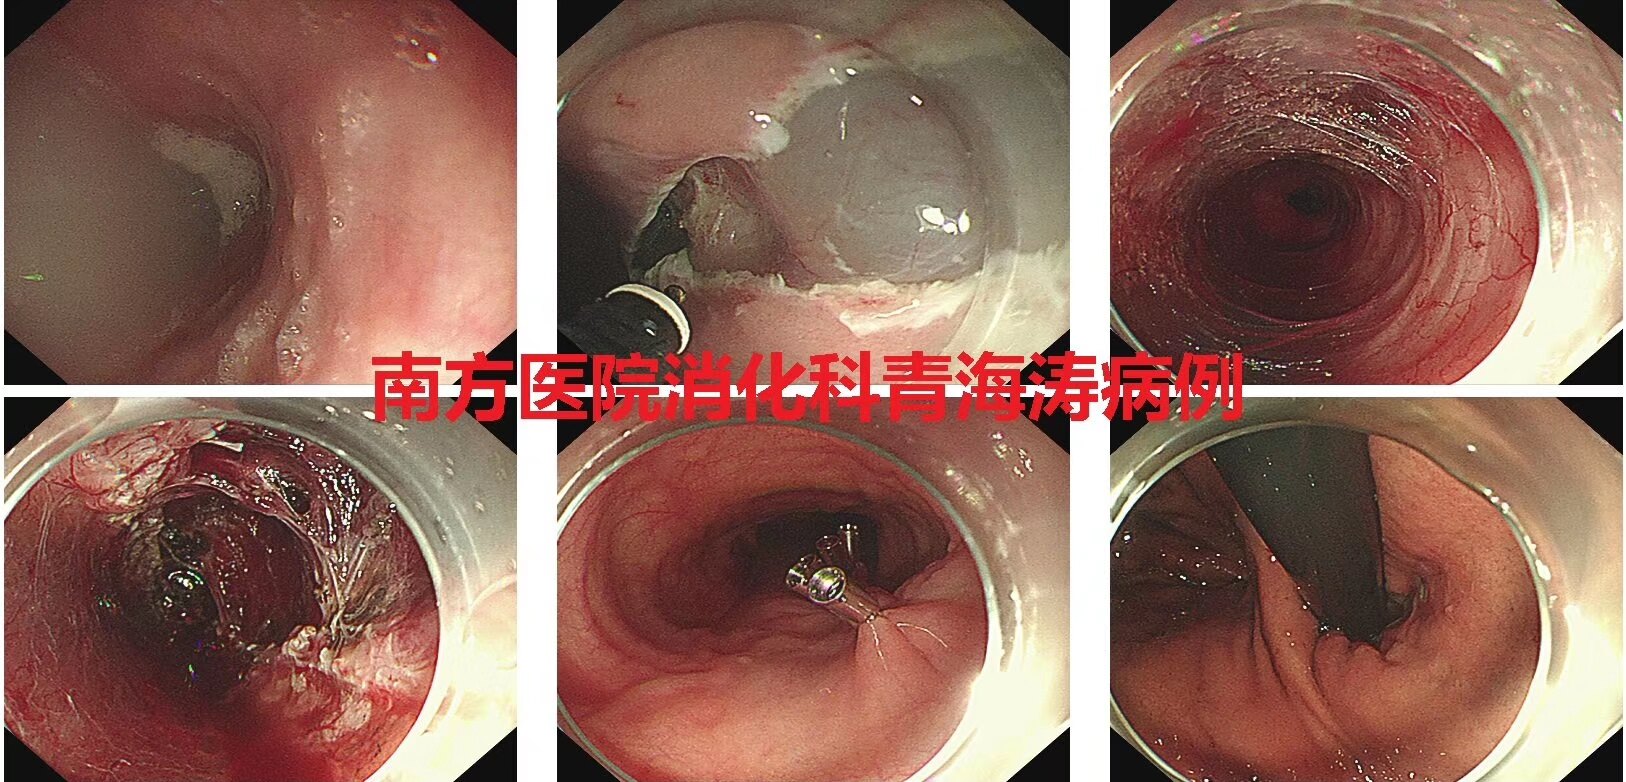 青海涛教授完成2例内镜下手术治疗贲门失弛缓,贲门黏膜下肿瘤